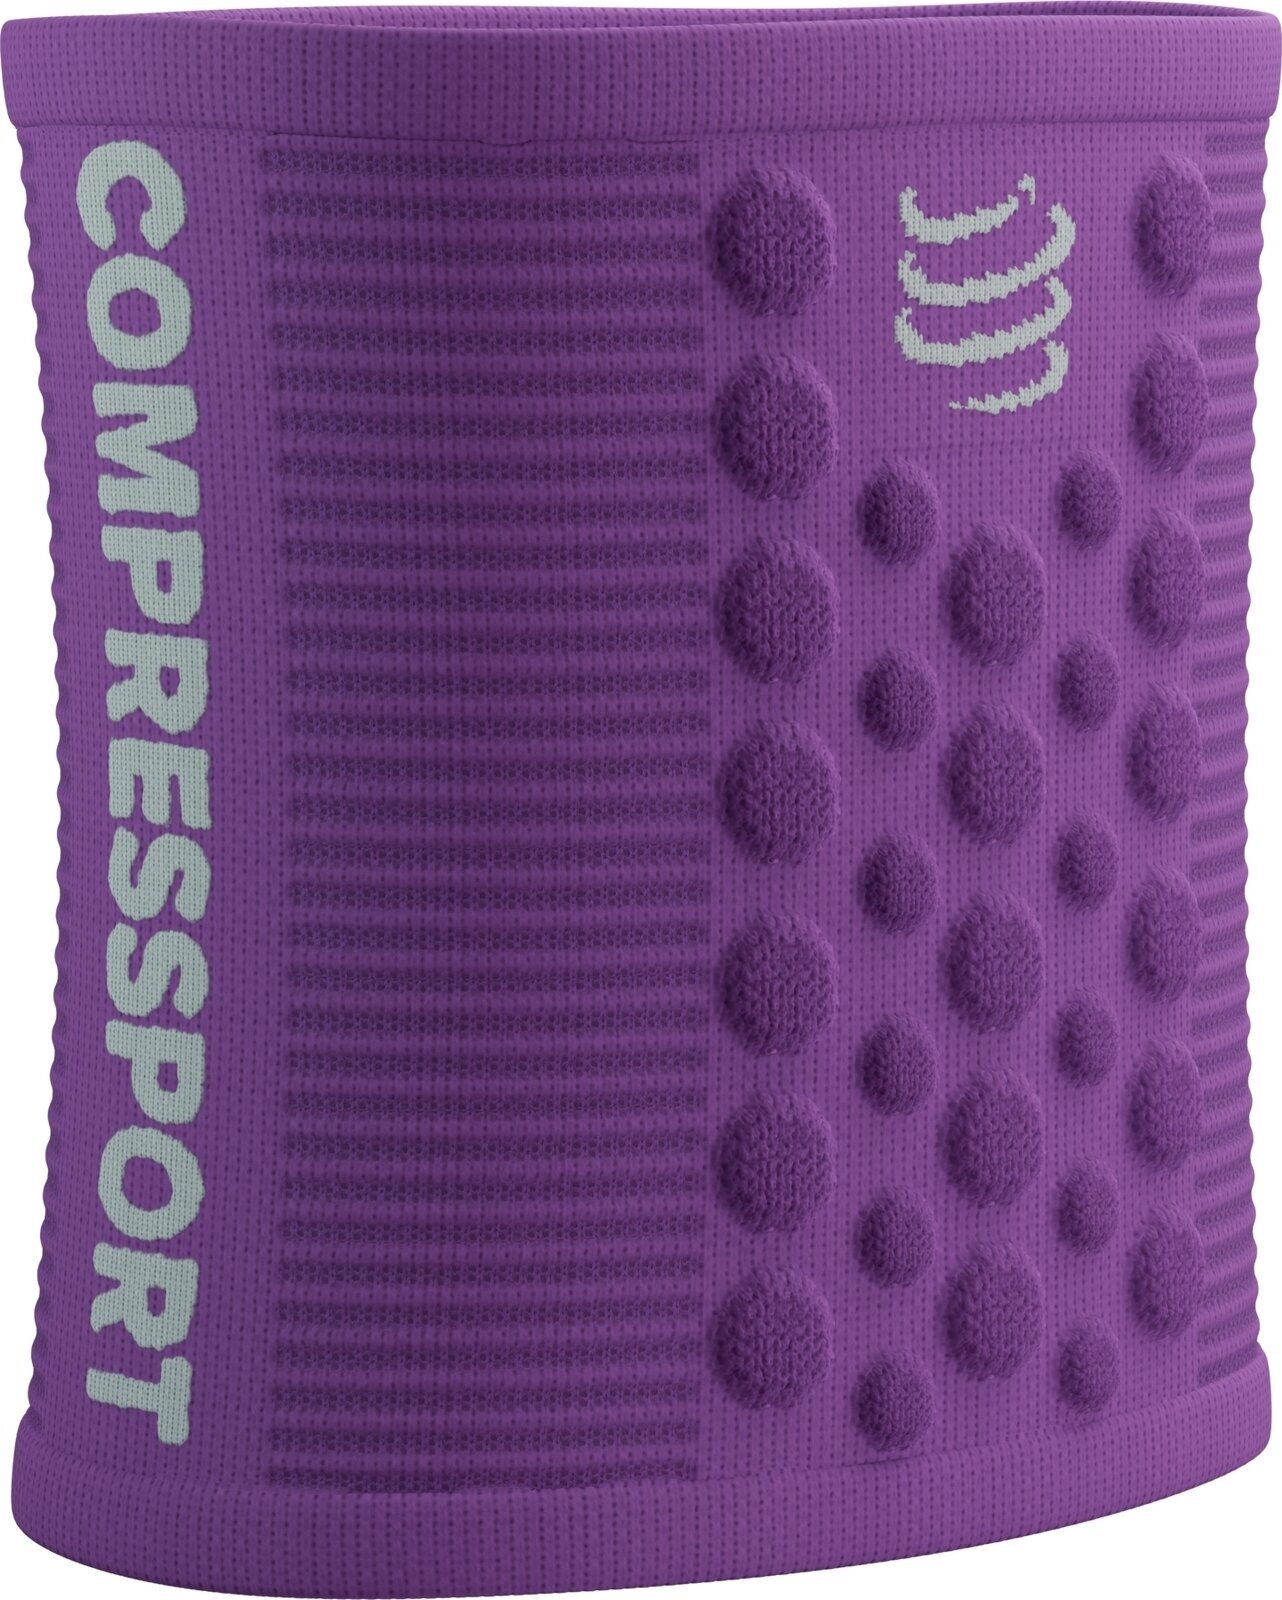 Încălzitoare pentru brațe Compressport Sweatbands 3D.Dots Royal Lilac/White UNI Încălzitoare pentru brațe